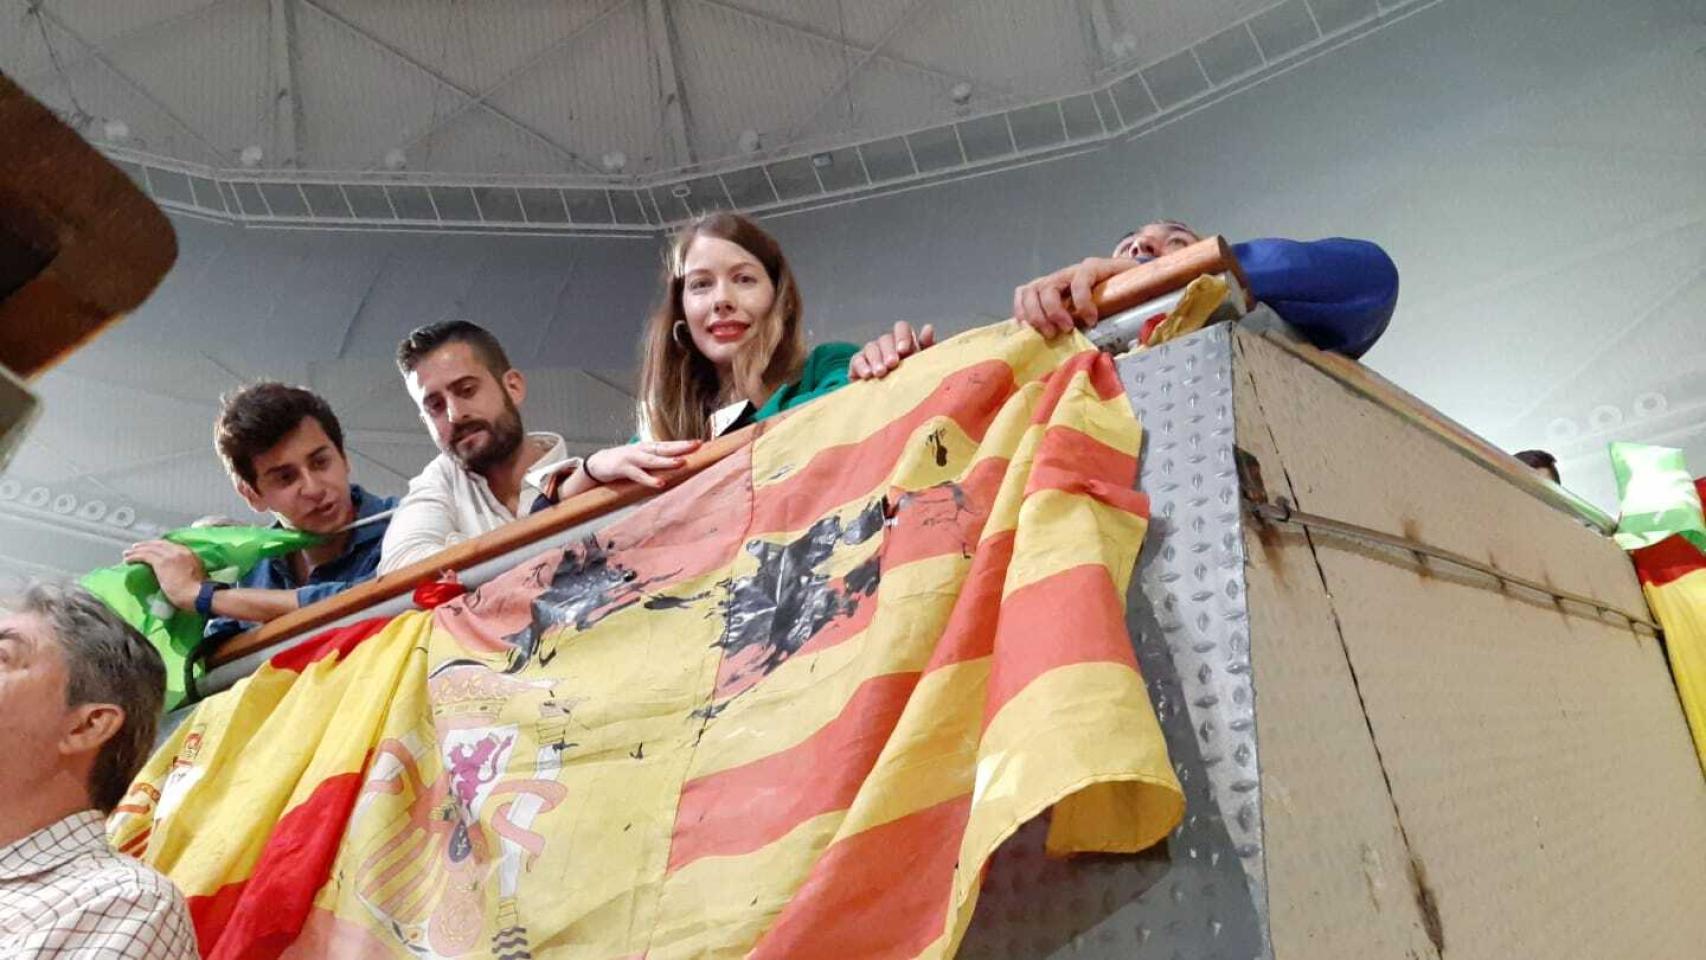 Patricia Muñoz muestra su bandera de España recosida con una señeya catalana, que fue atacada por los CDR.